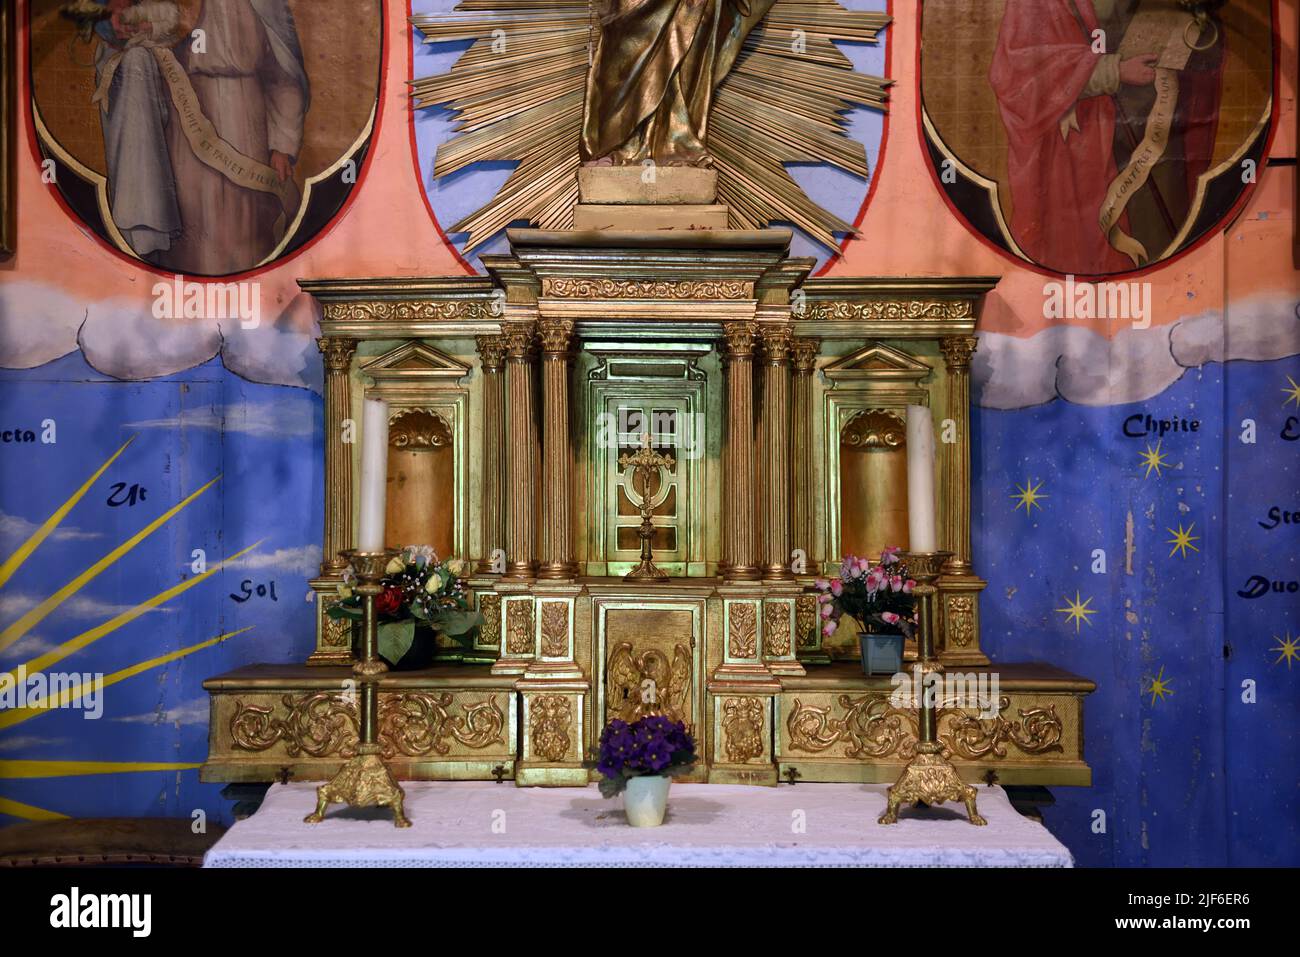 Altar & Interior of the c18th Chapel, Chapelle de Notre-Dame-de-Bon- Secours, atop Medieval Tower, the Tour Randonne, Nyons Drôme Provence France Stock Photo